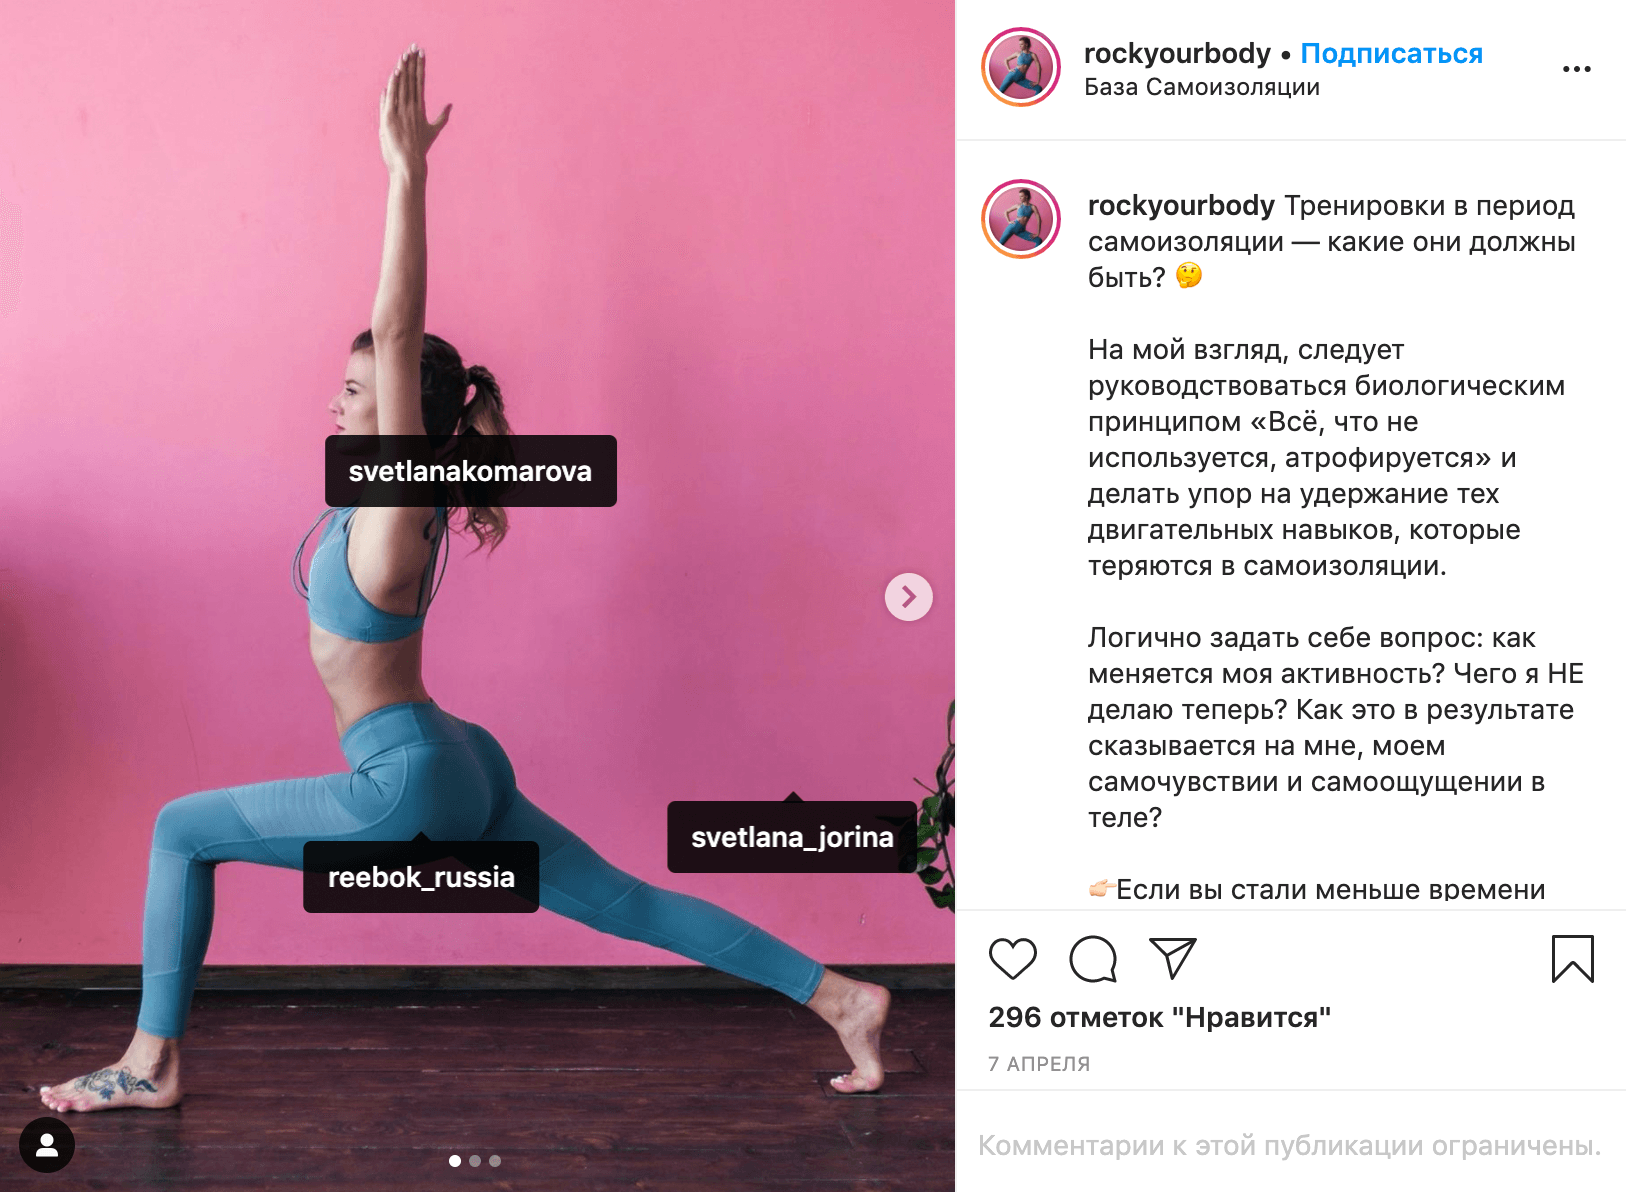 А это пример поста от амбассадора Reebok. Девушка пишет, как тренироваться в период самоизоляции, и показывает упражнения в костюме от этого бренда